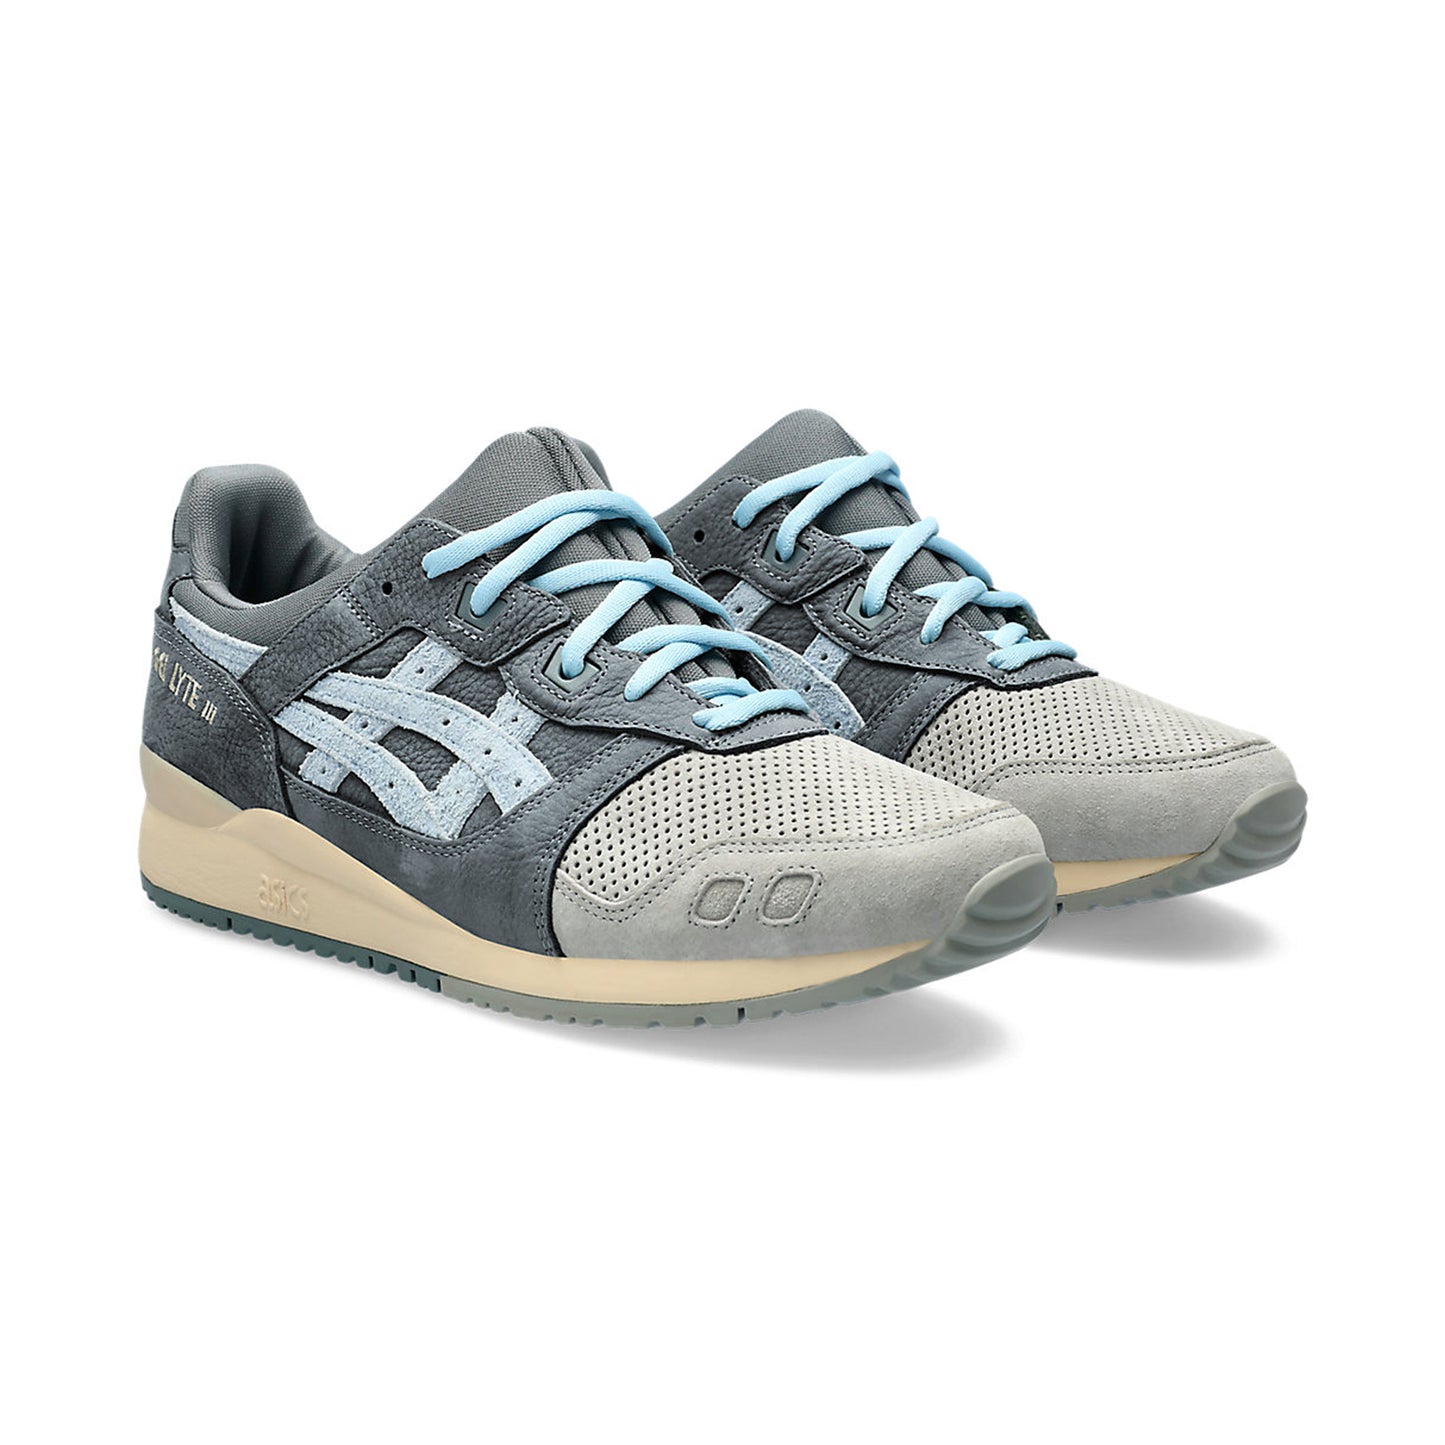 ASICS Gel-Lyte III OG Seal Grey Sneakers